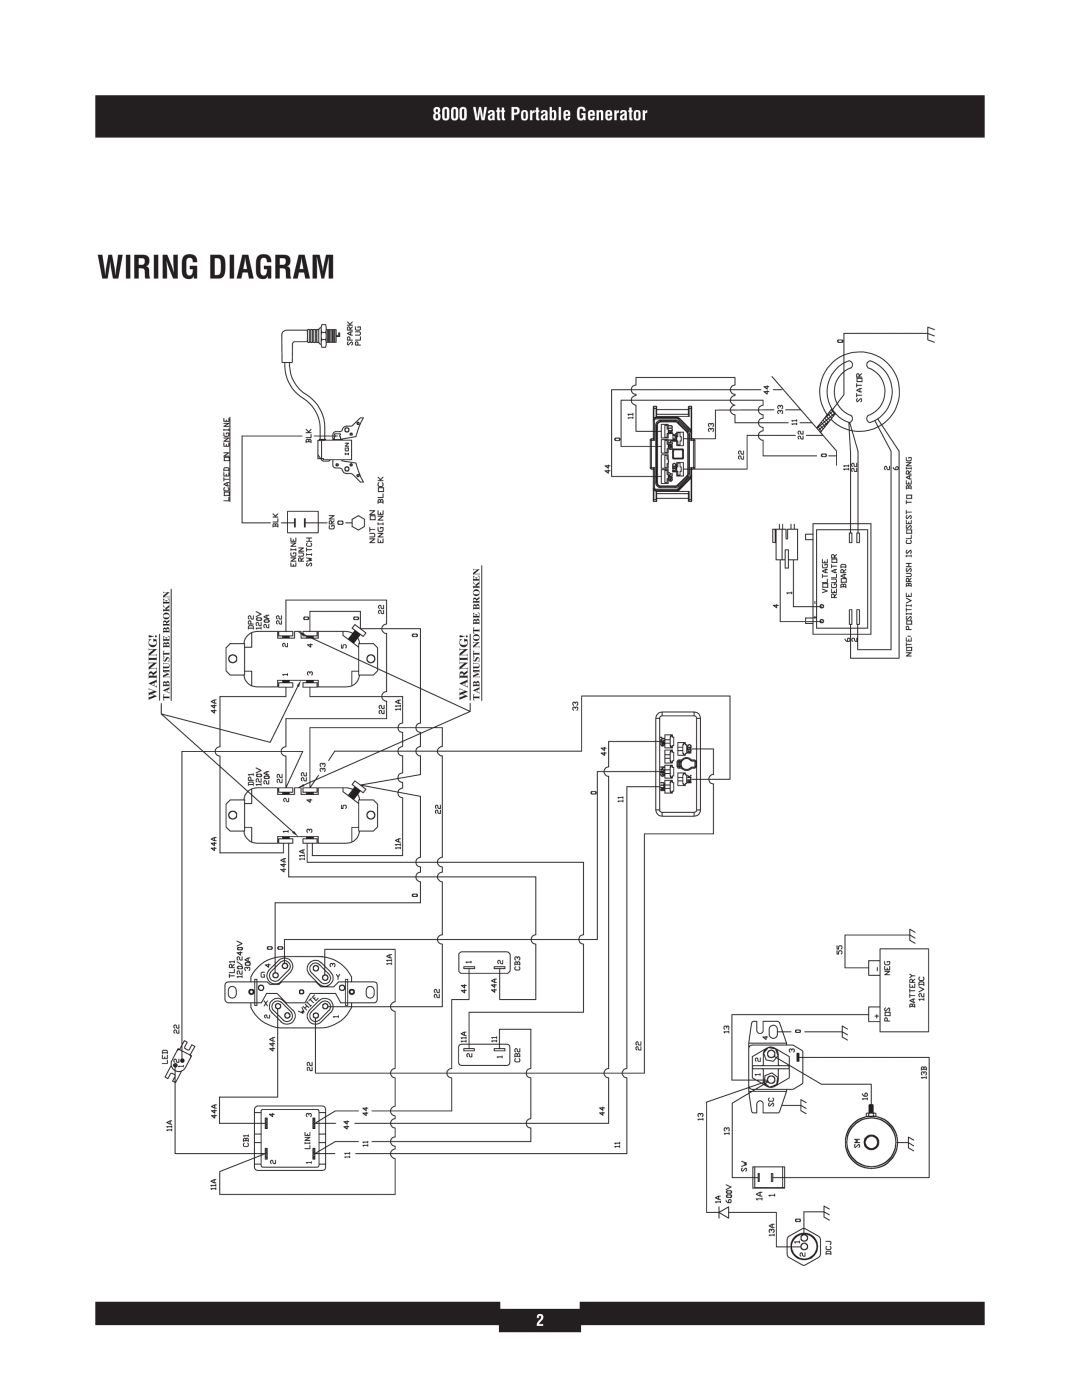 Briggs & Stratton 030426 manual Wiring Diagram, Watt Portable Generator, Warning! Tab Must Not Be Broken 